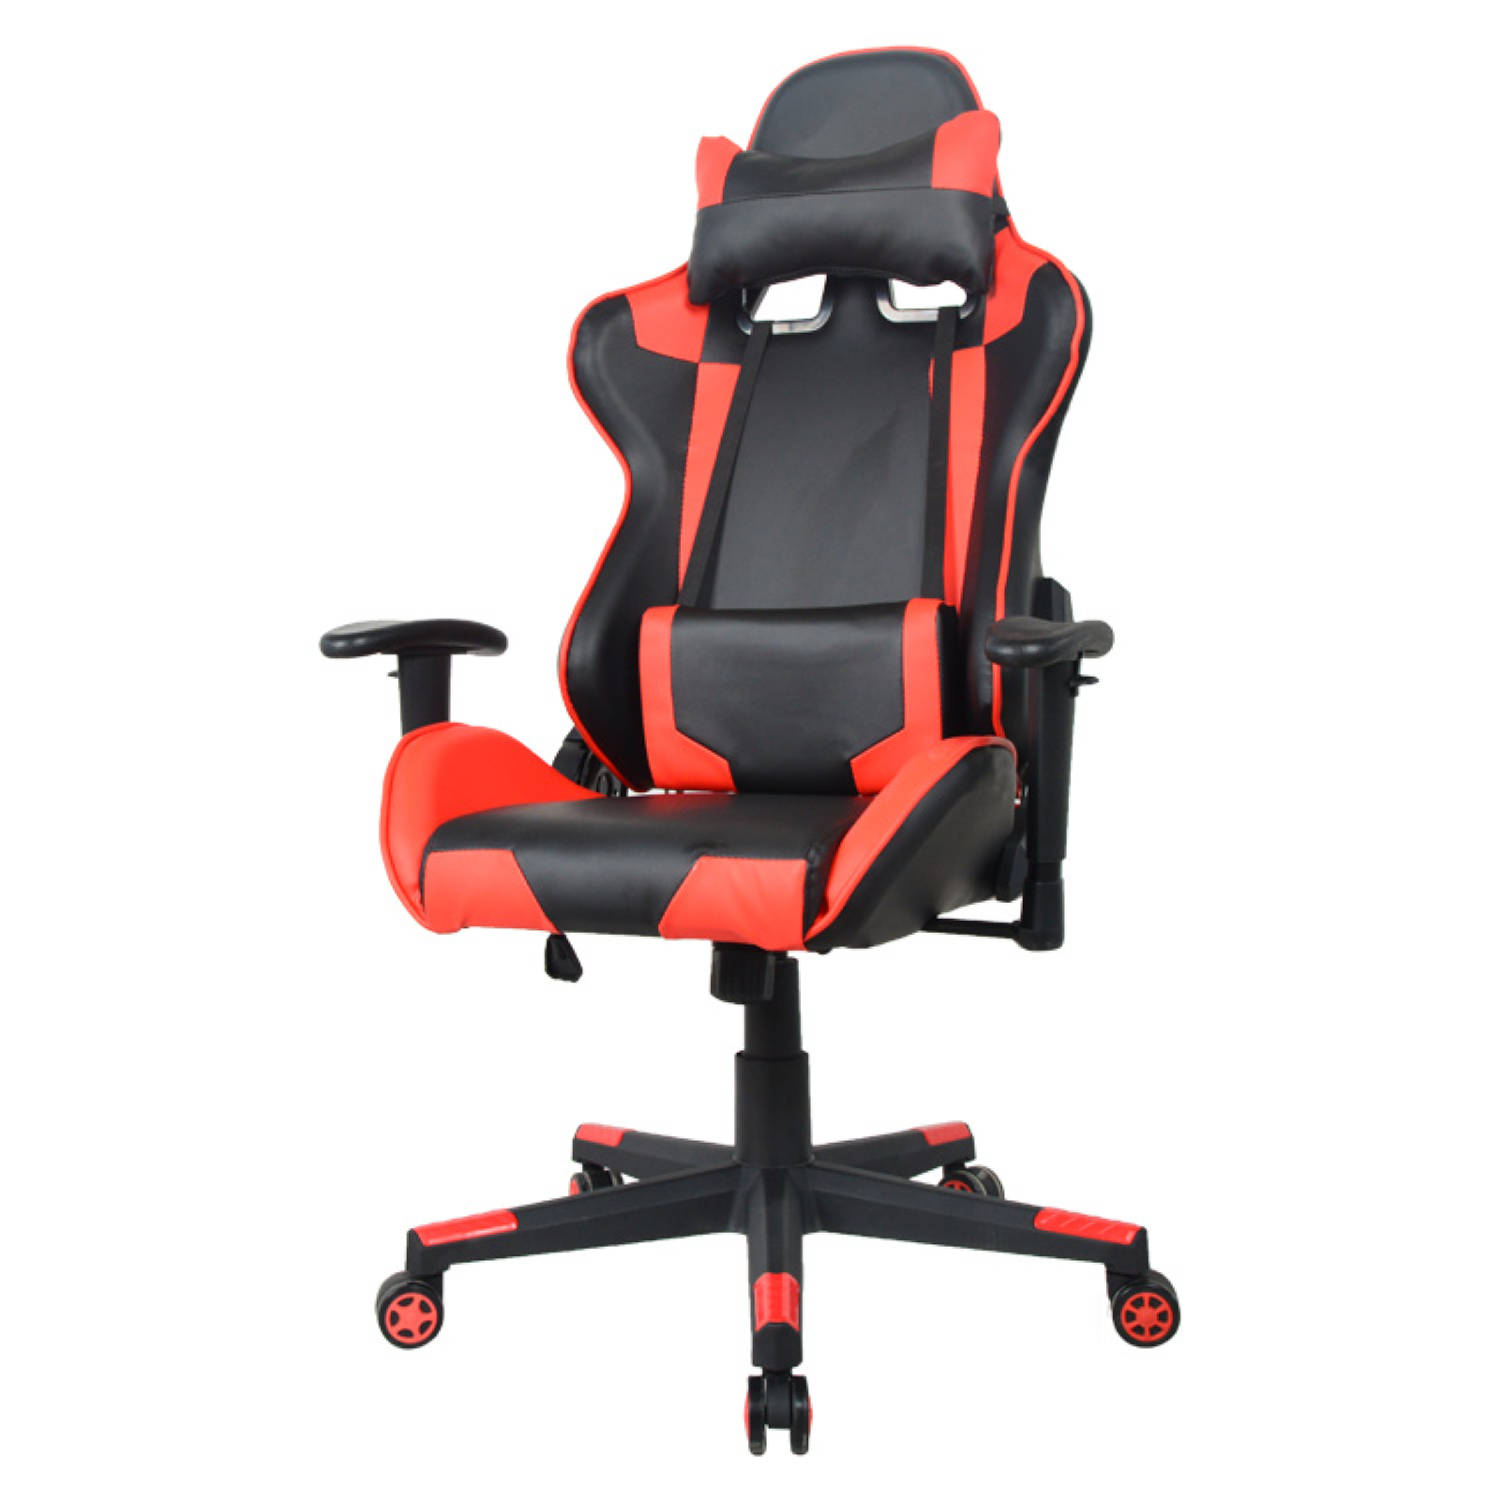 tuberculose Ale Gewaad Bureaustoel gamestoel Thomas - racing gaming stijl stoel - ergonomisch -  rood zwart | Blokker